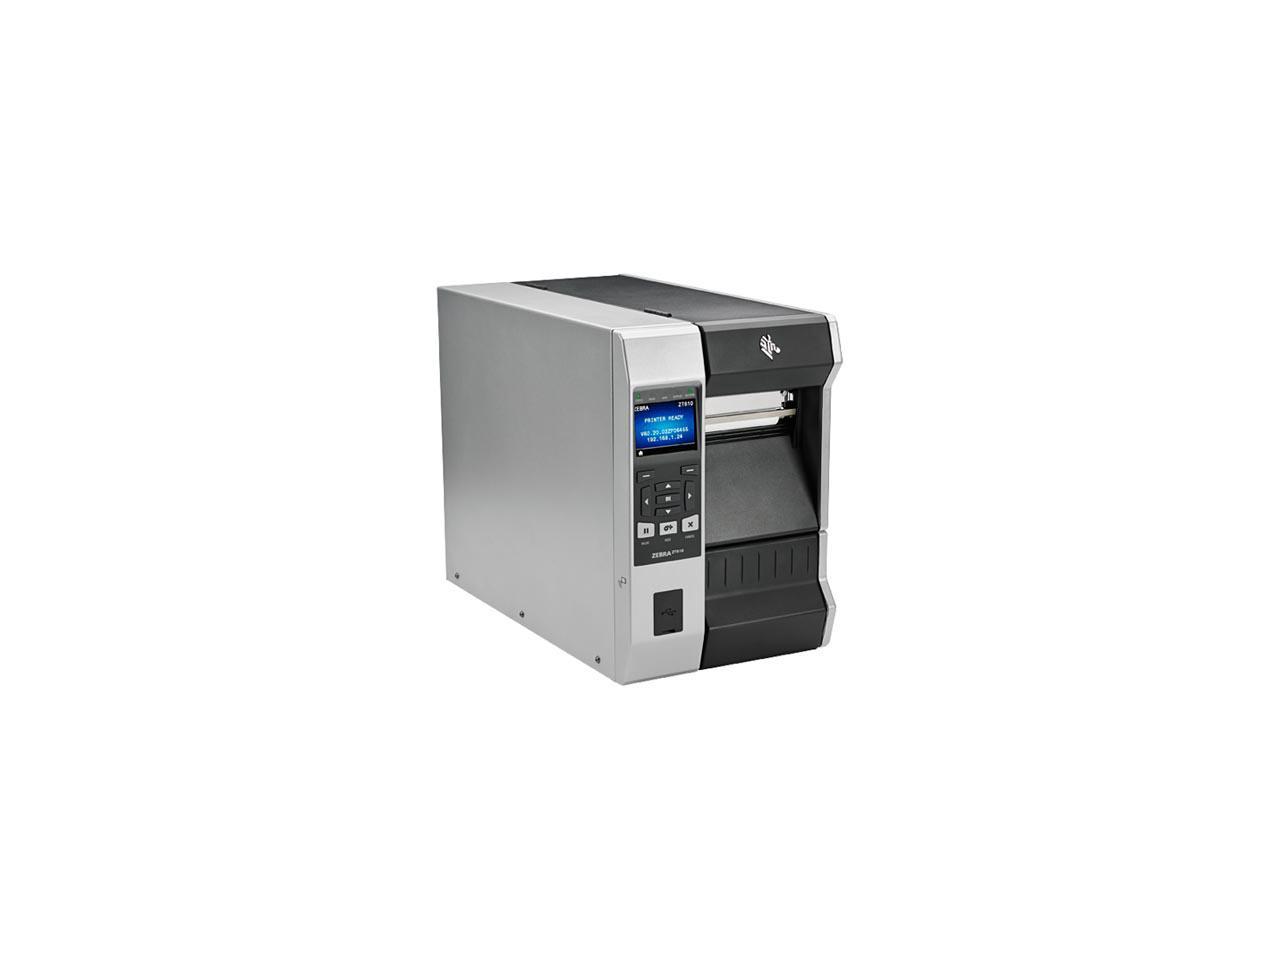 Zebra Zt610 4 Thermal Transfer Label Printer With Color Screen 600dpi Serial Usb Gigabit 9971